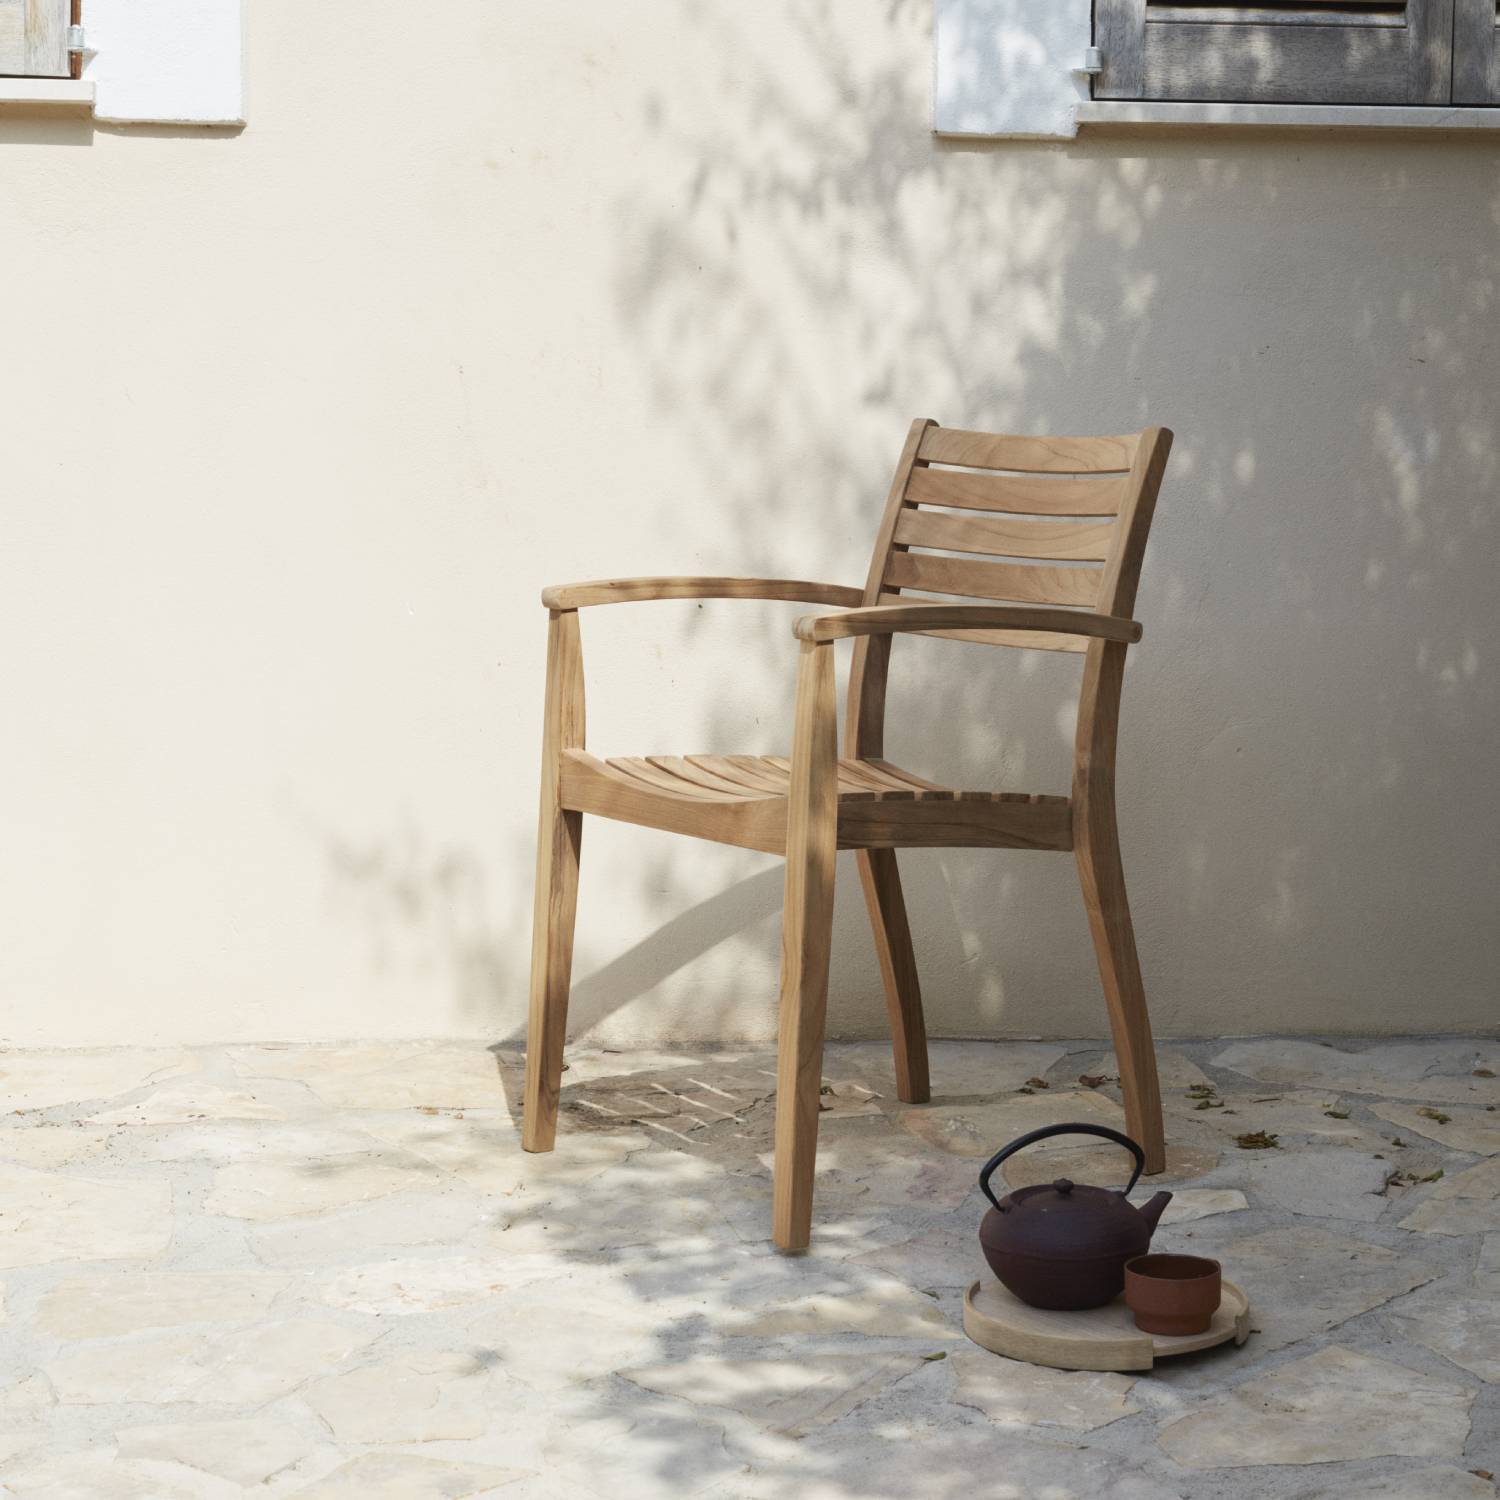 Ballare Chair: Outdoor